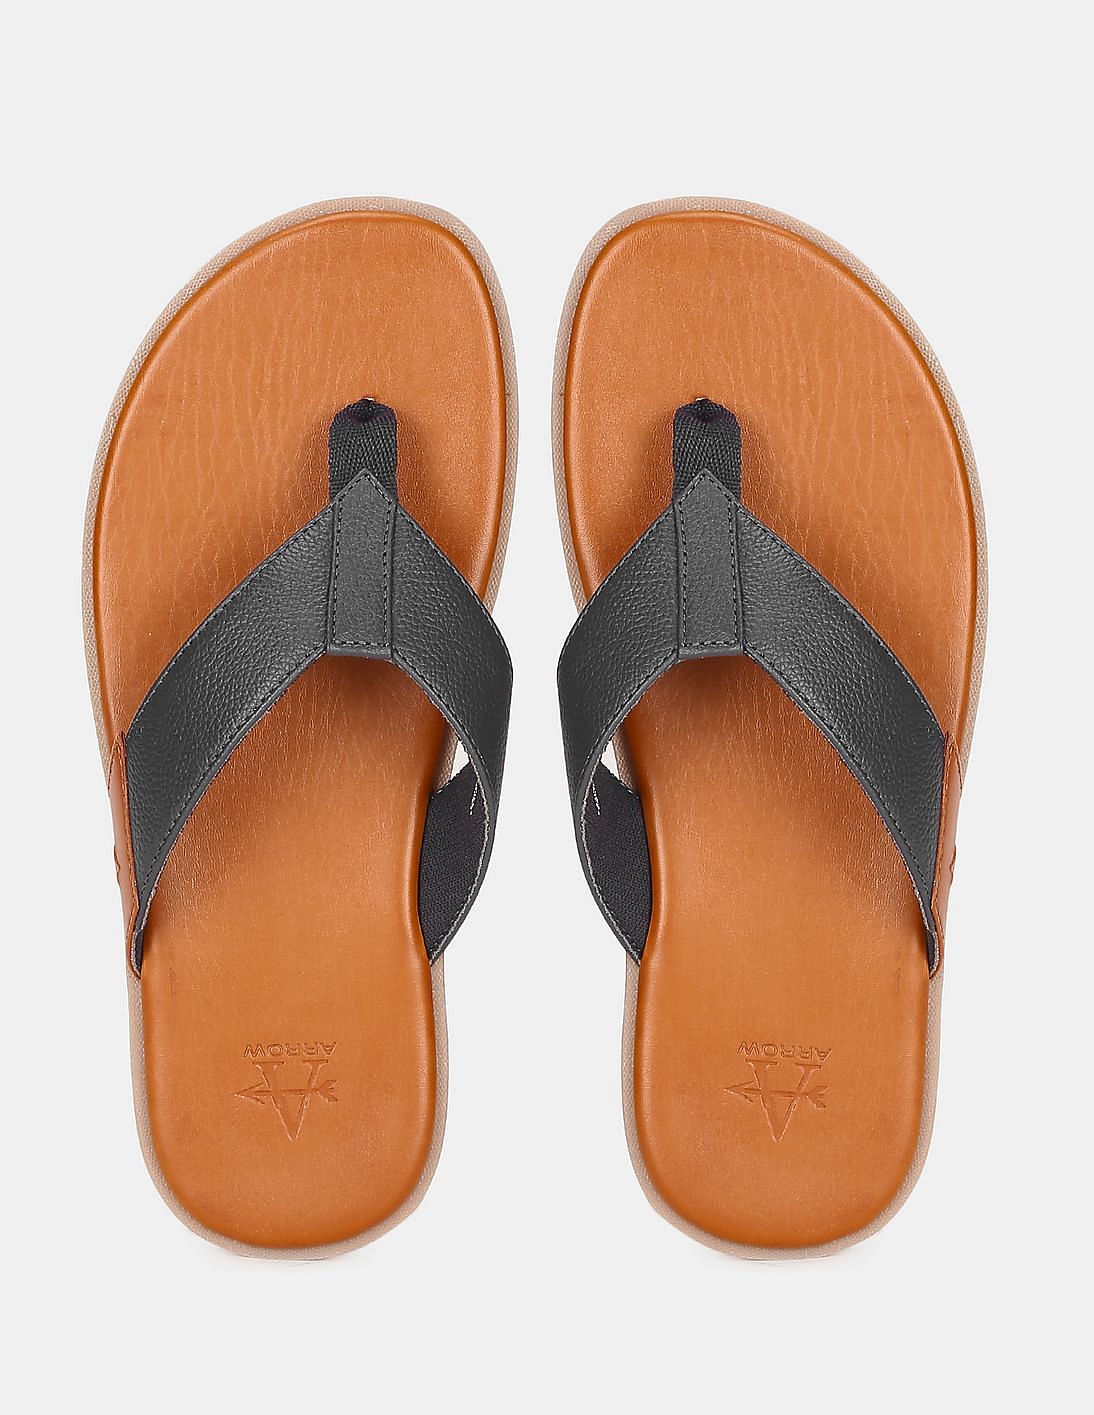 Buy Men Brown Casual Slippers Online | SKU: 16-245-12-41-Metro Shoes